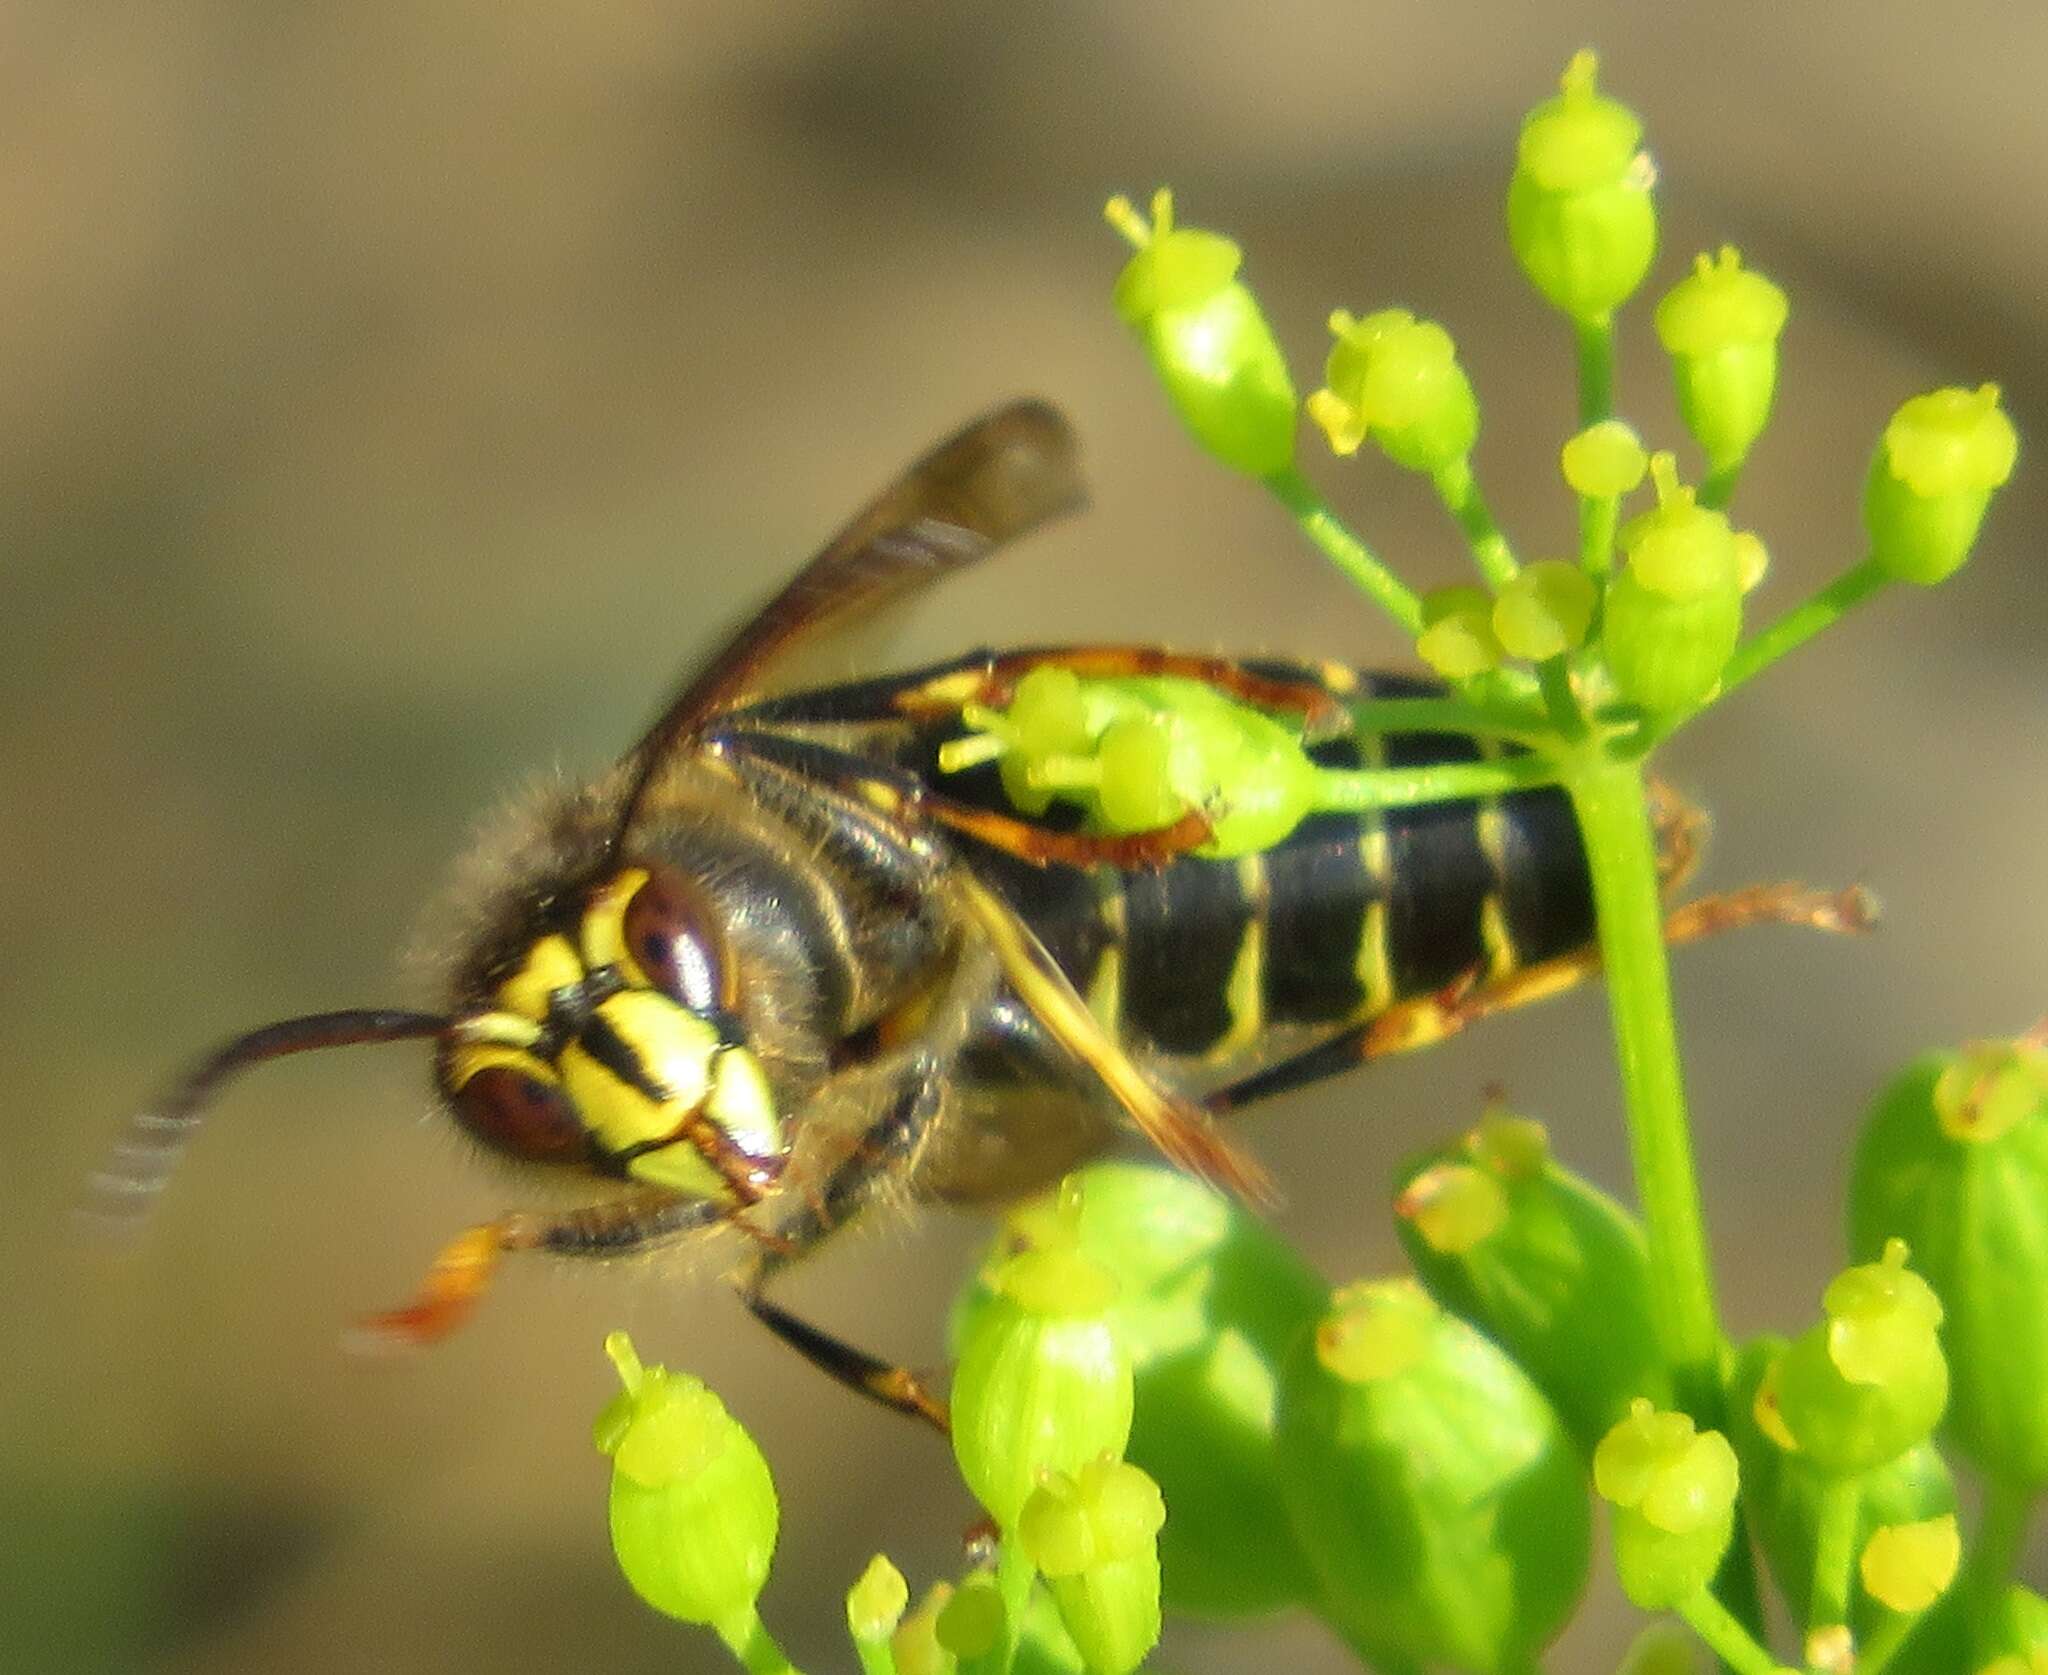 Image of median wasp